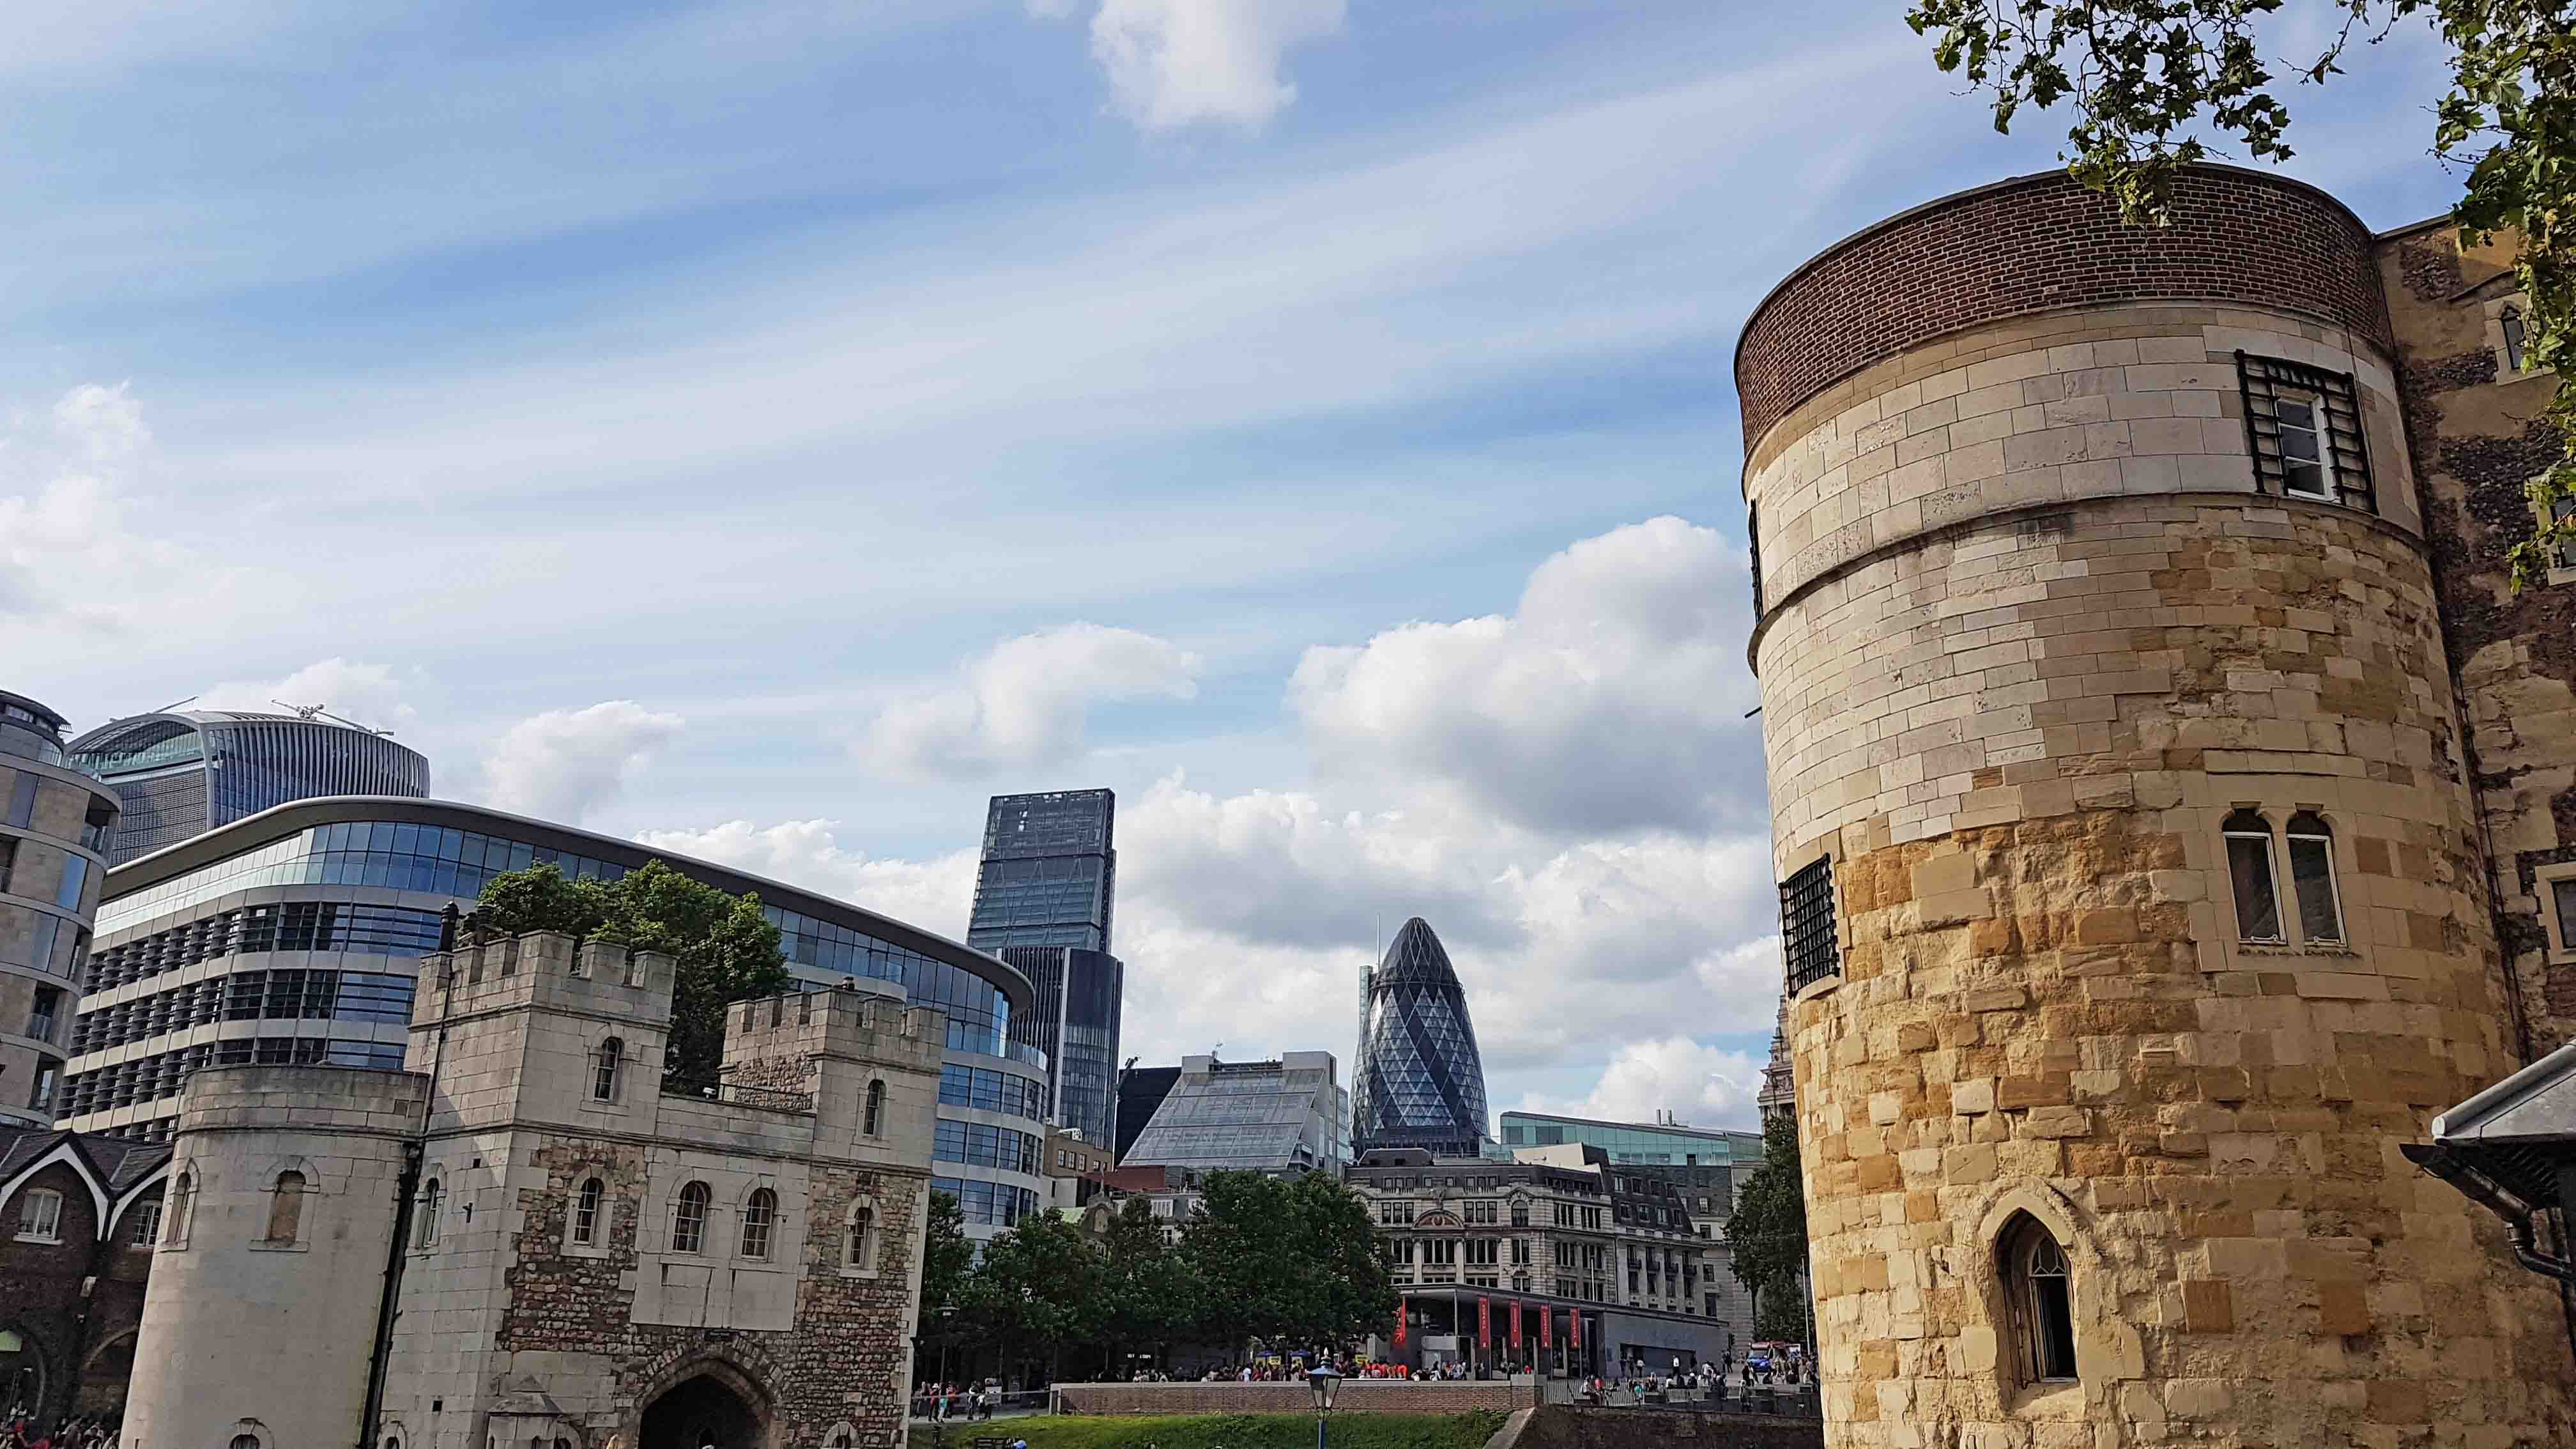 Contraste do antigo com o moderno | Tower of London - Londres